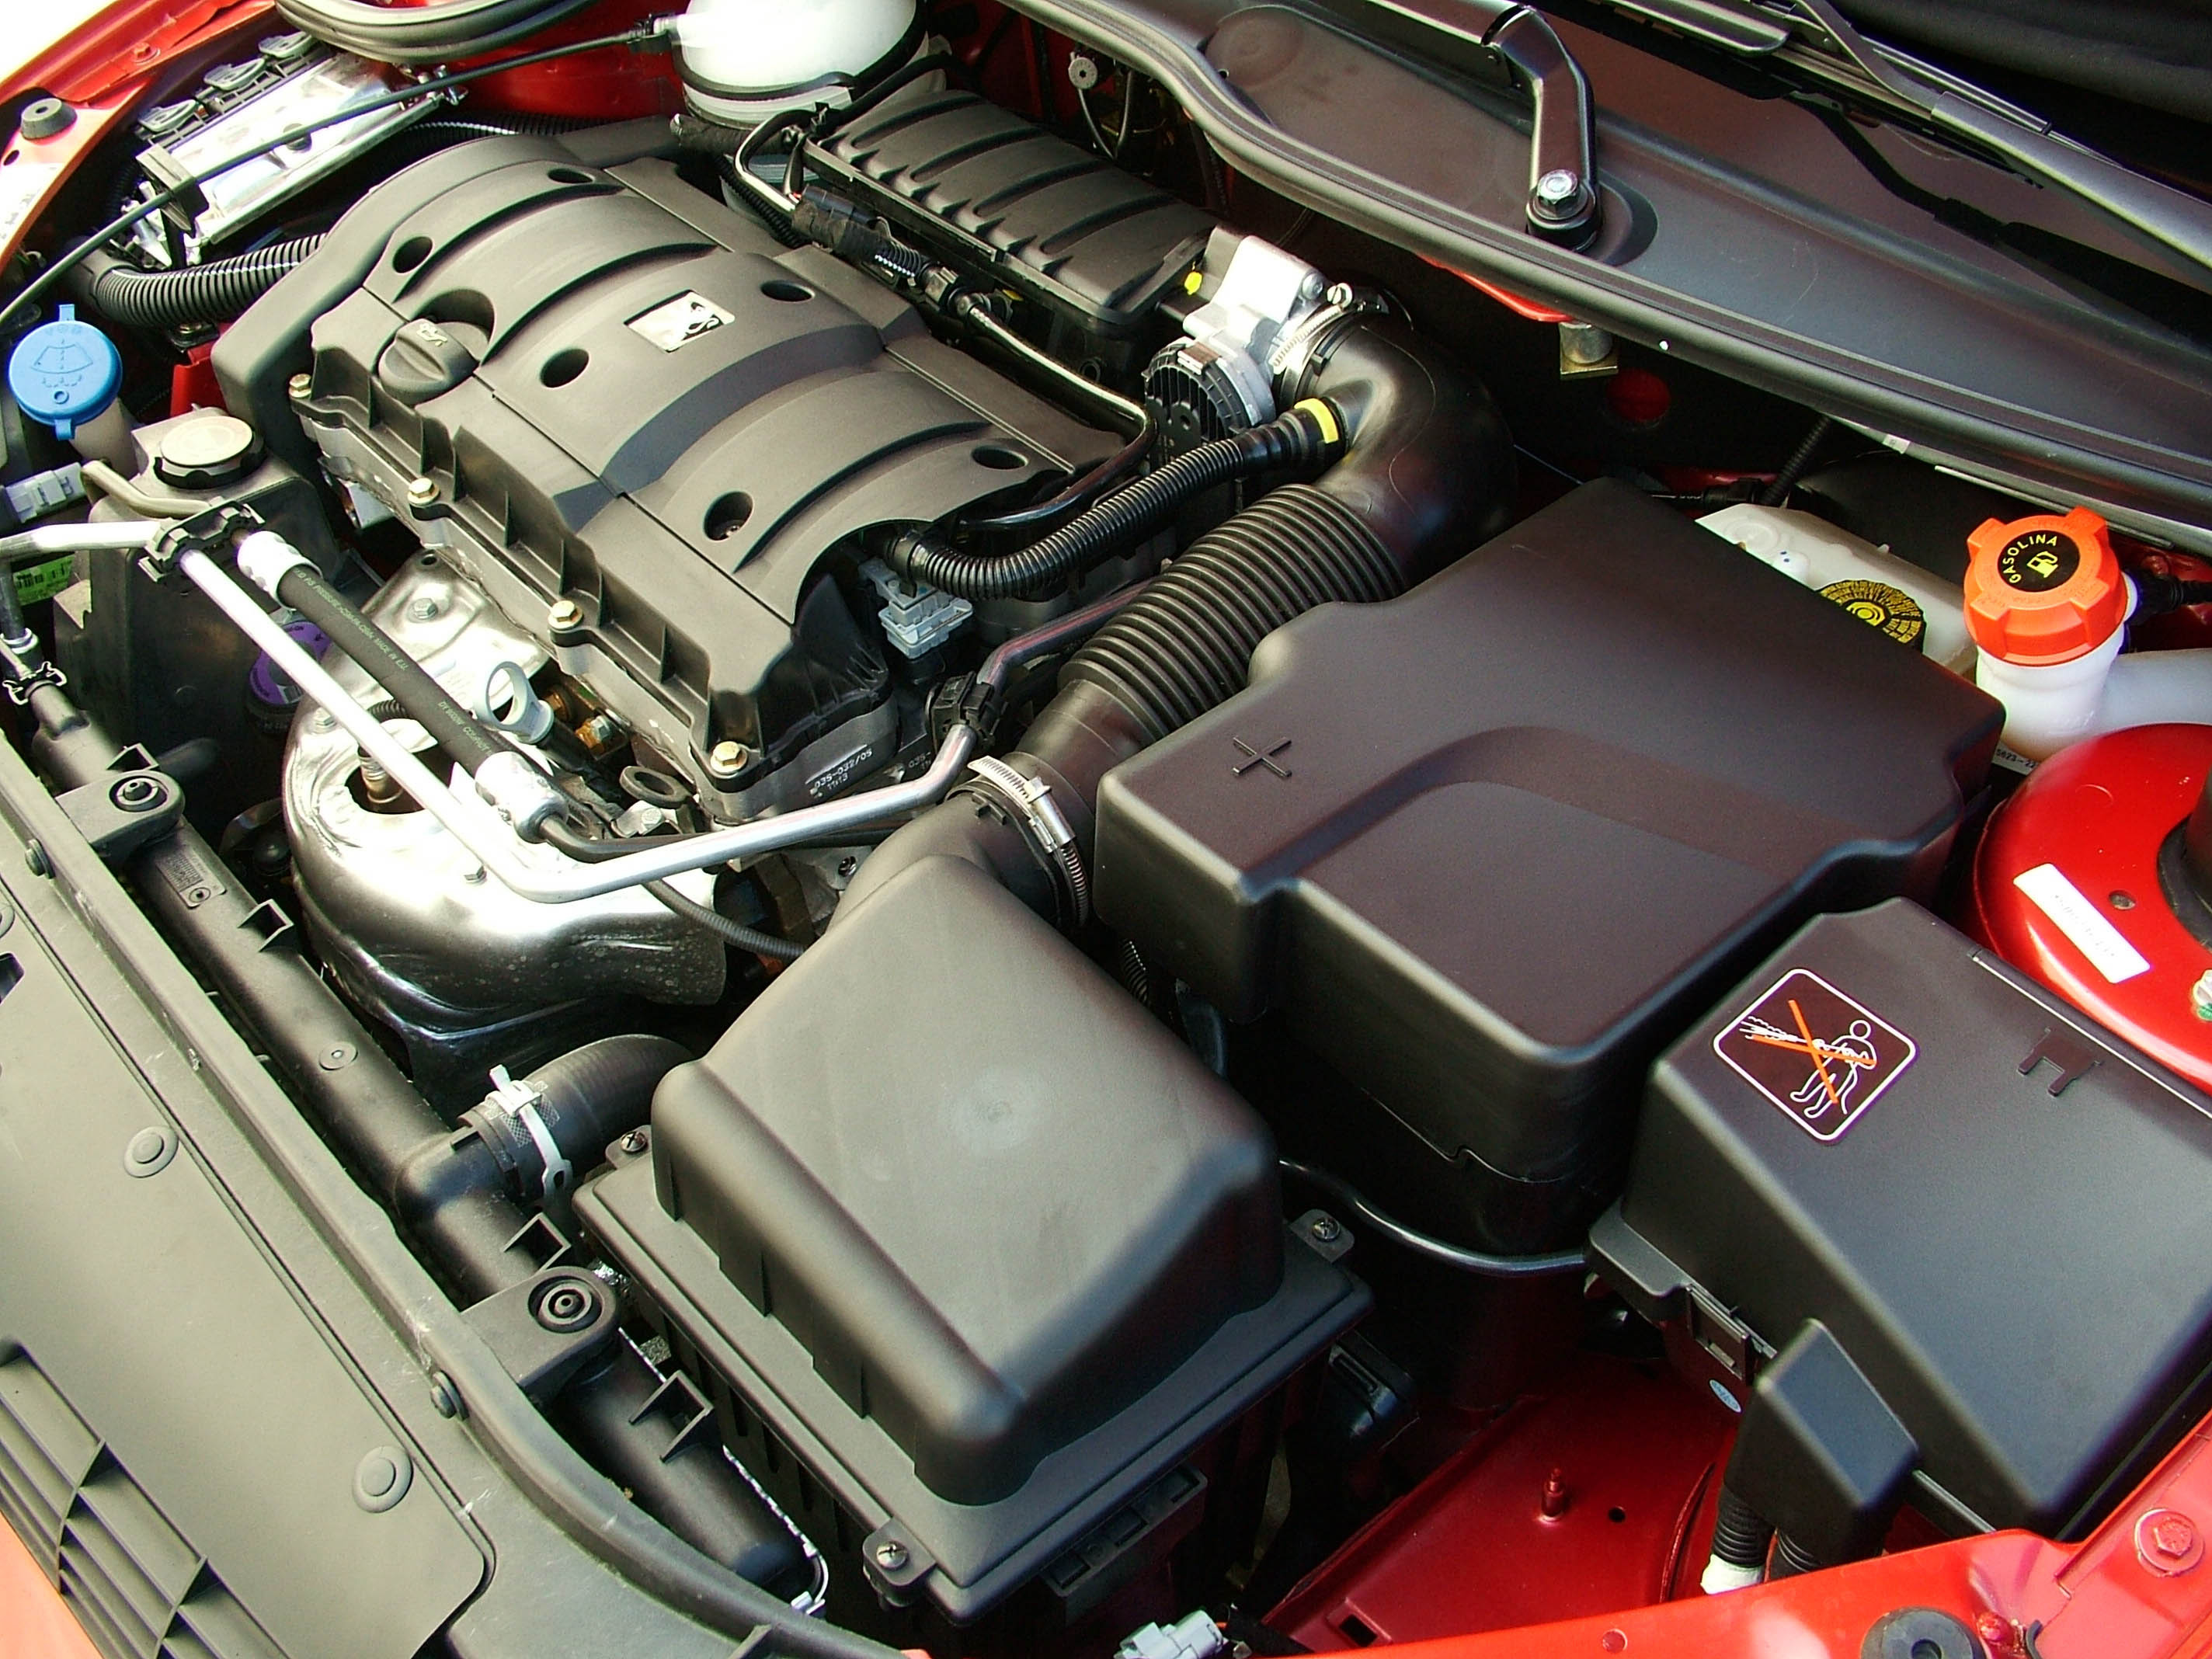 Motor do 206 1.6 16V Flex Feline da Peugeot, modelo 2005, testado pela revista Quatro Rodas.